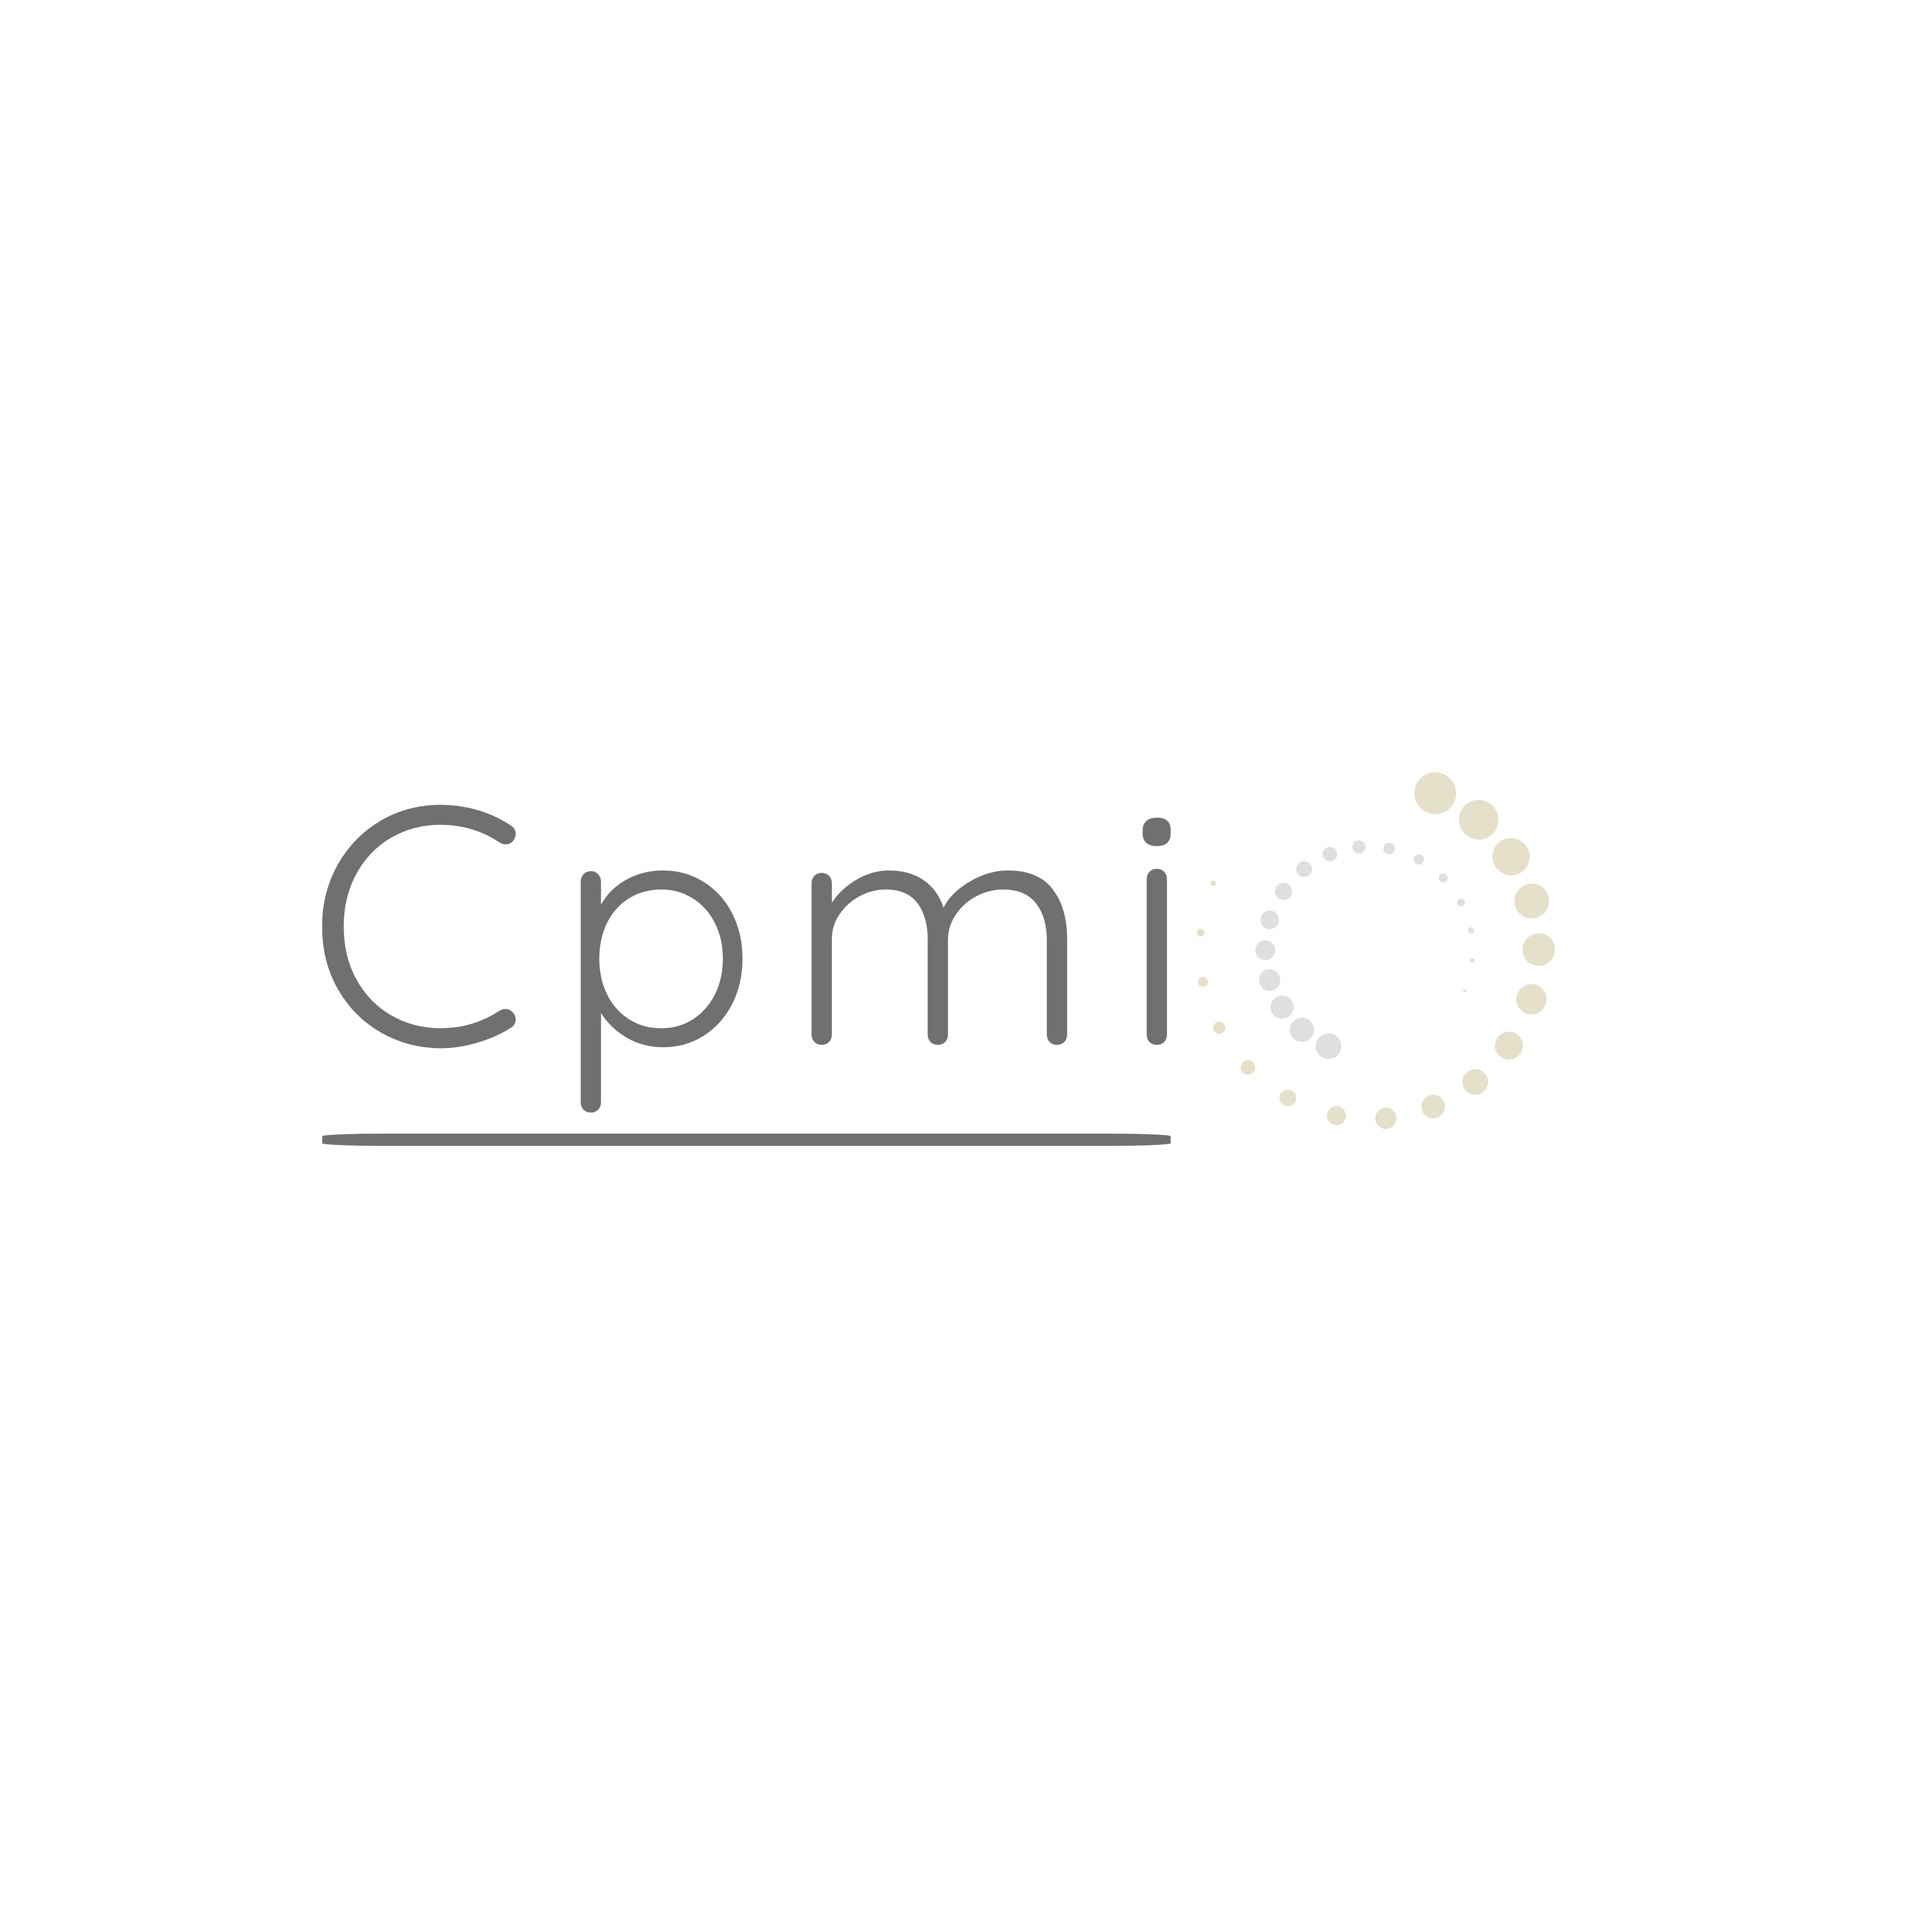 Cpmi - Centre de psychothérapie et médecine intégrative - Psychotherapist - Fribourg - 077 442 41 04 Switzerland | ShowMeLocal.com